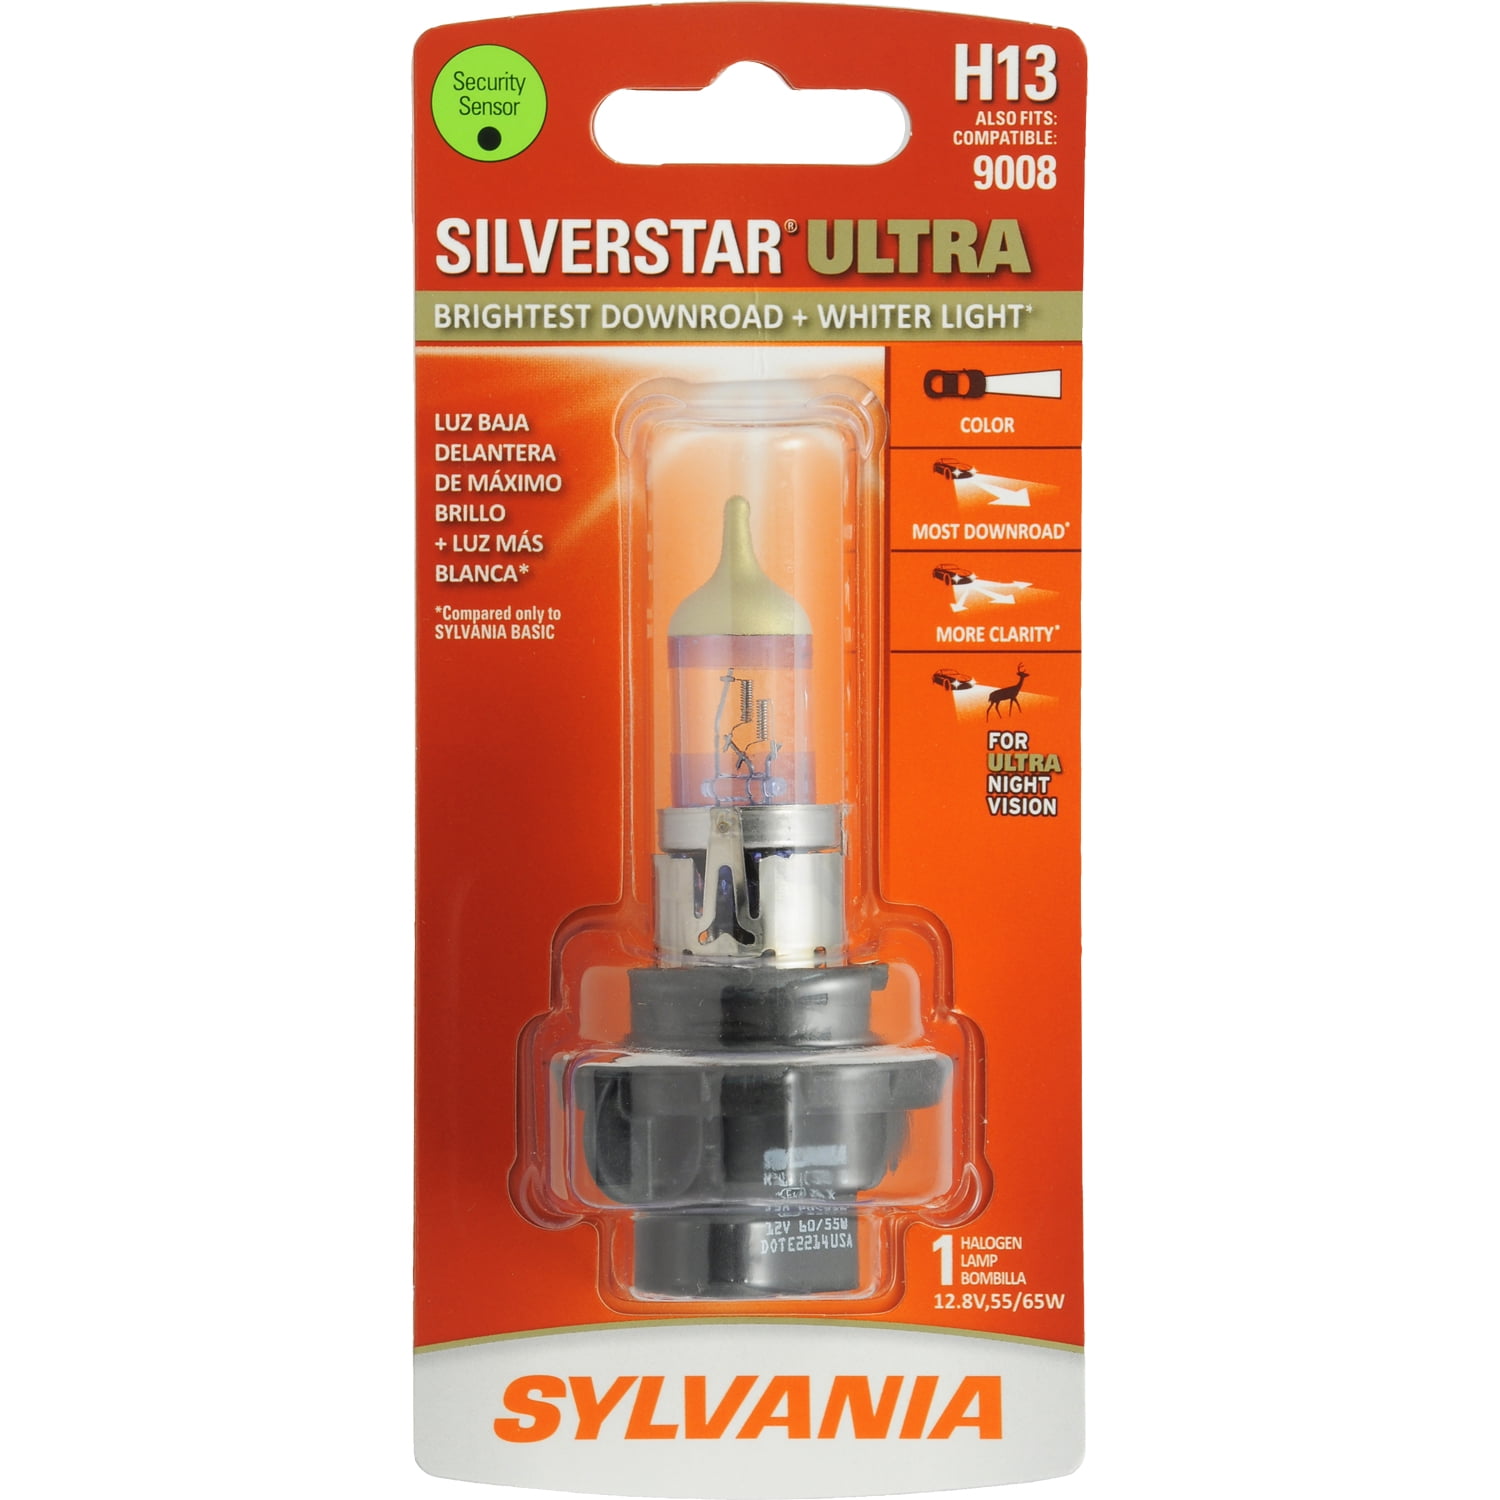 Sylvania H13 SilverStar Ultra Halogen Headlight Bulb, Pack of 1.